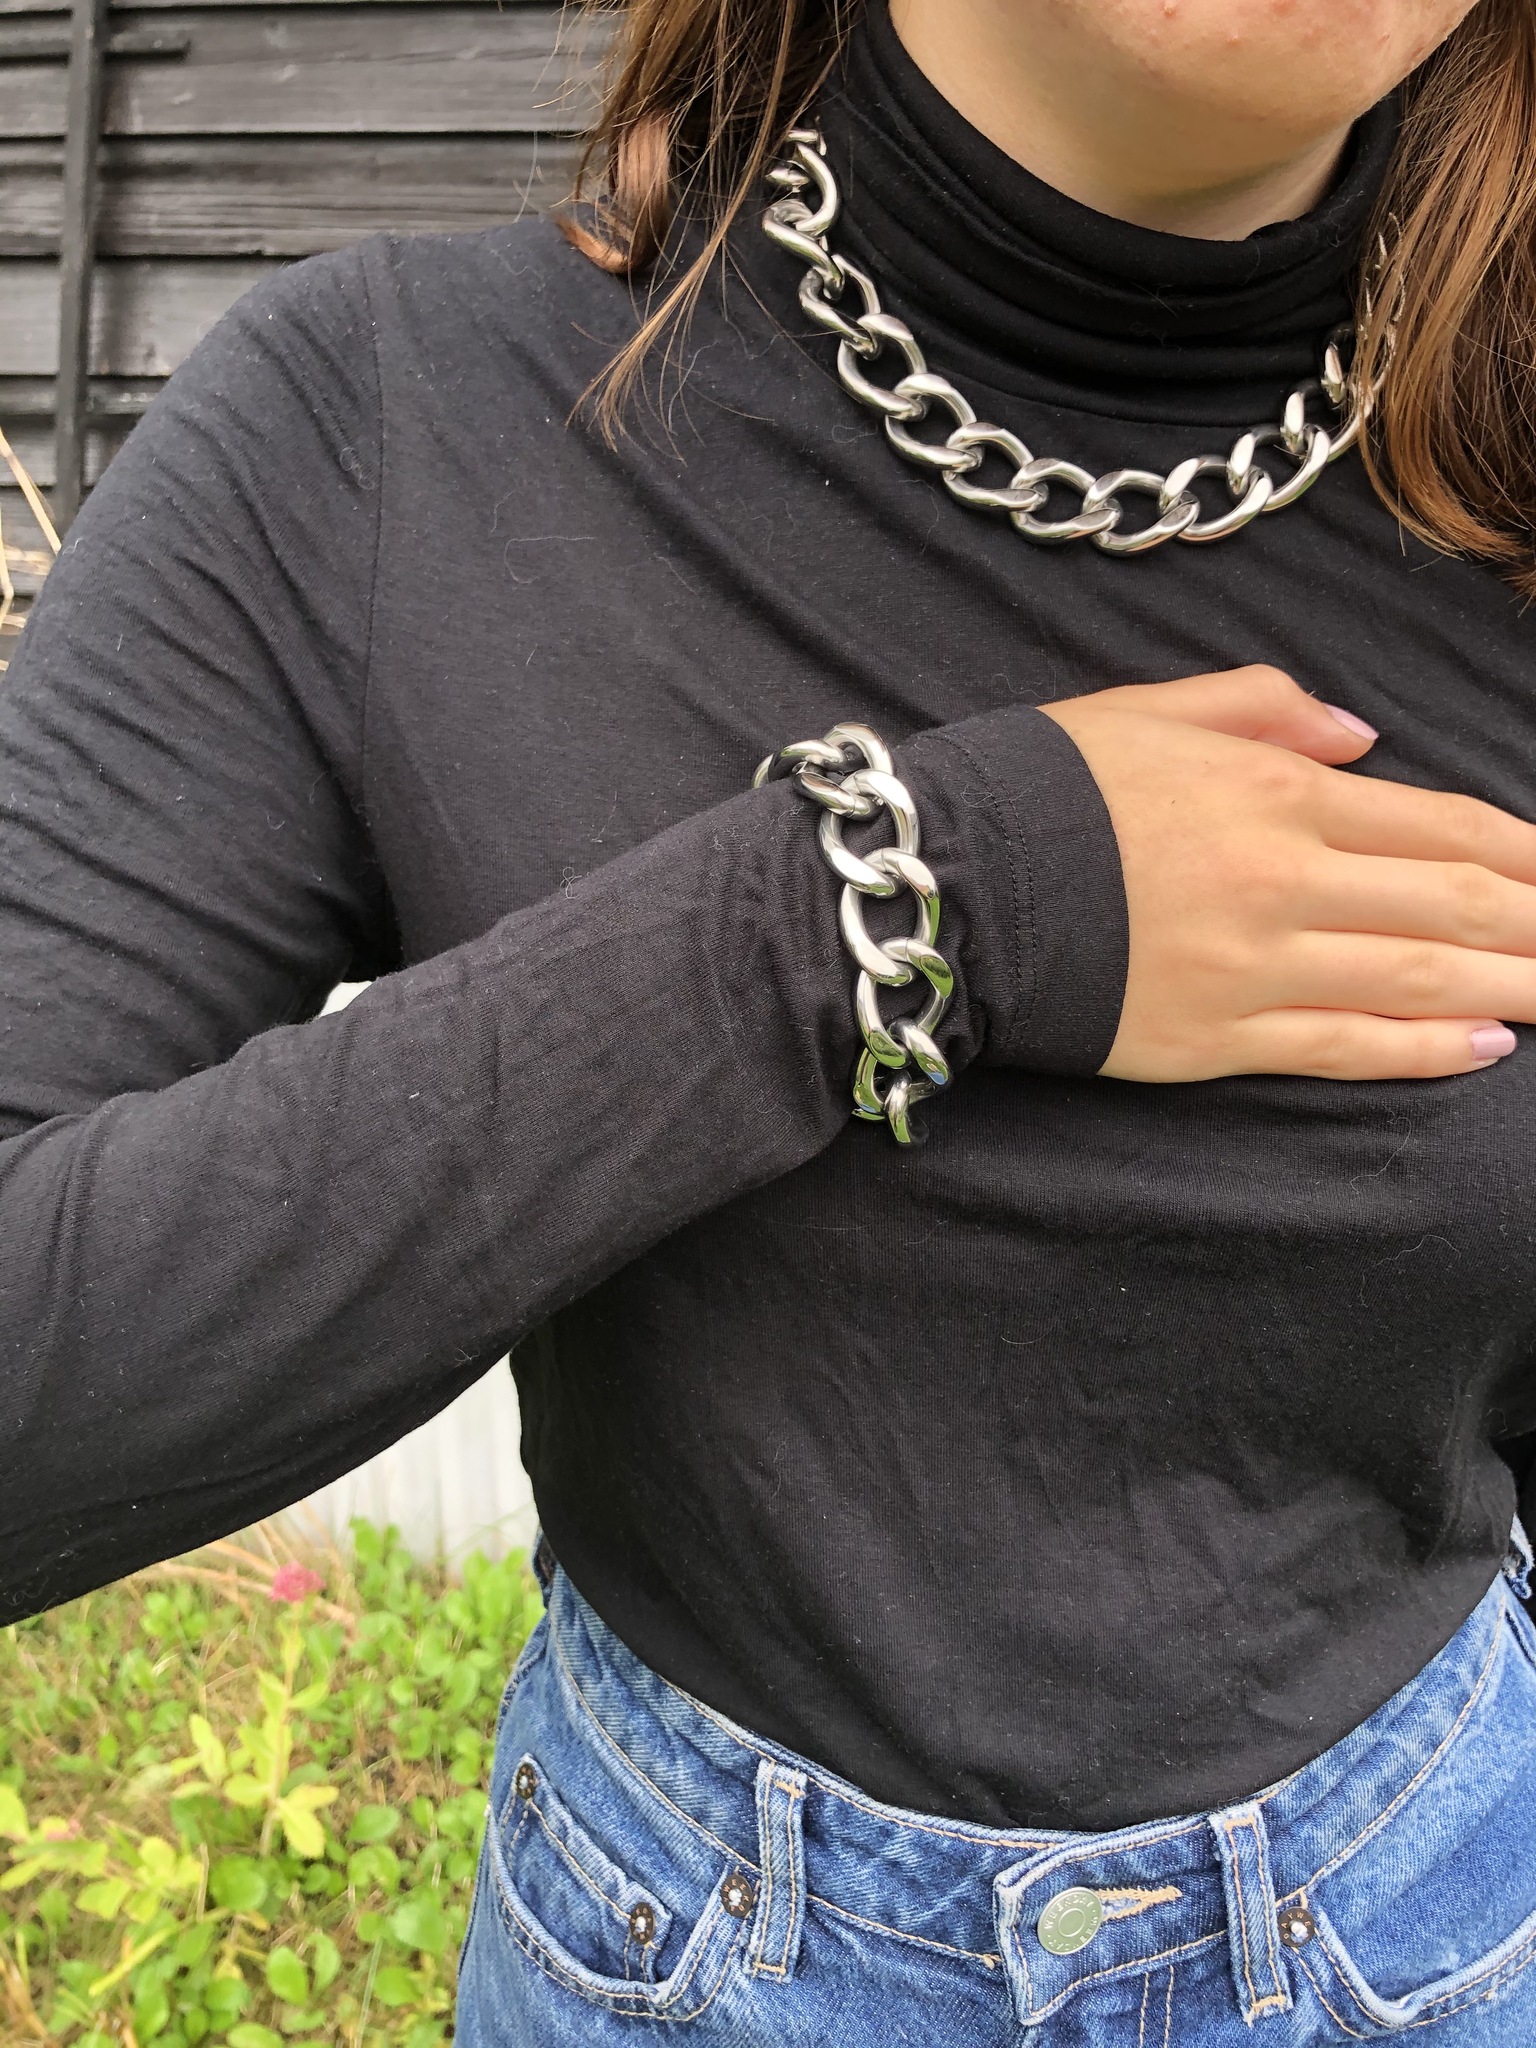 Zoe maffigt halsband och armband i stål från A&A från Ericsson Ur och Guld